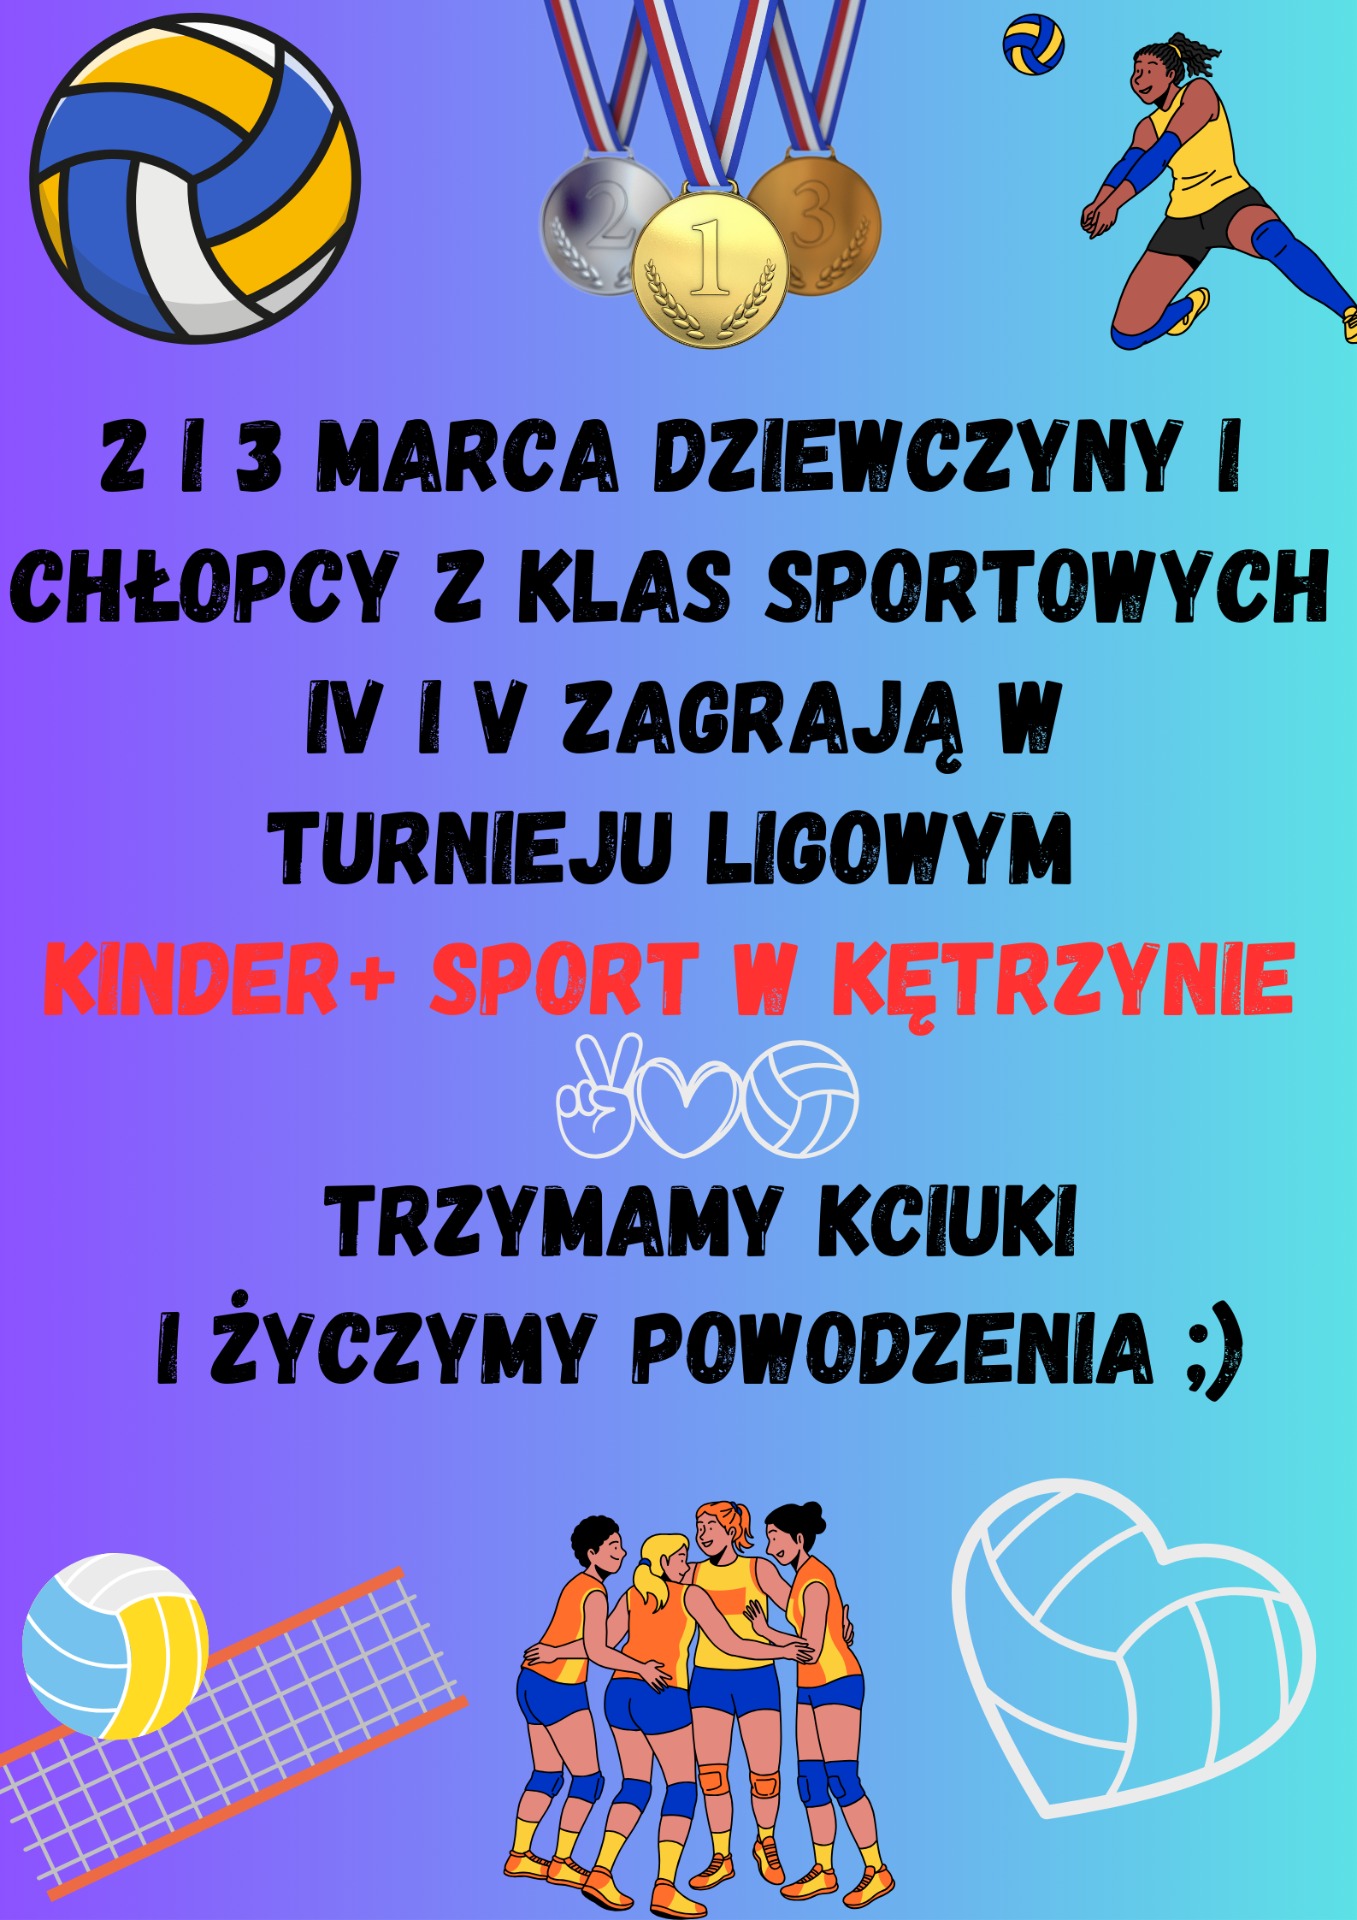 Przed nami pierwszy turniej Ligowy Kinder + Sport! - Obrazek 1